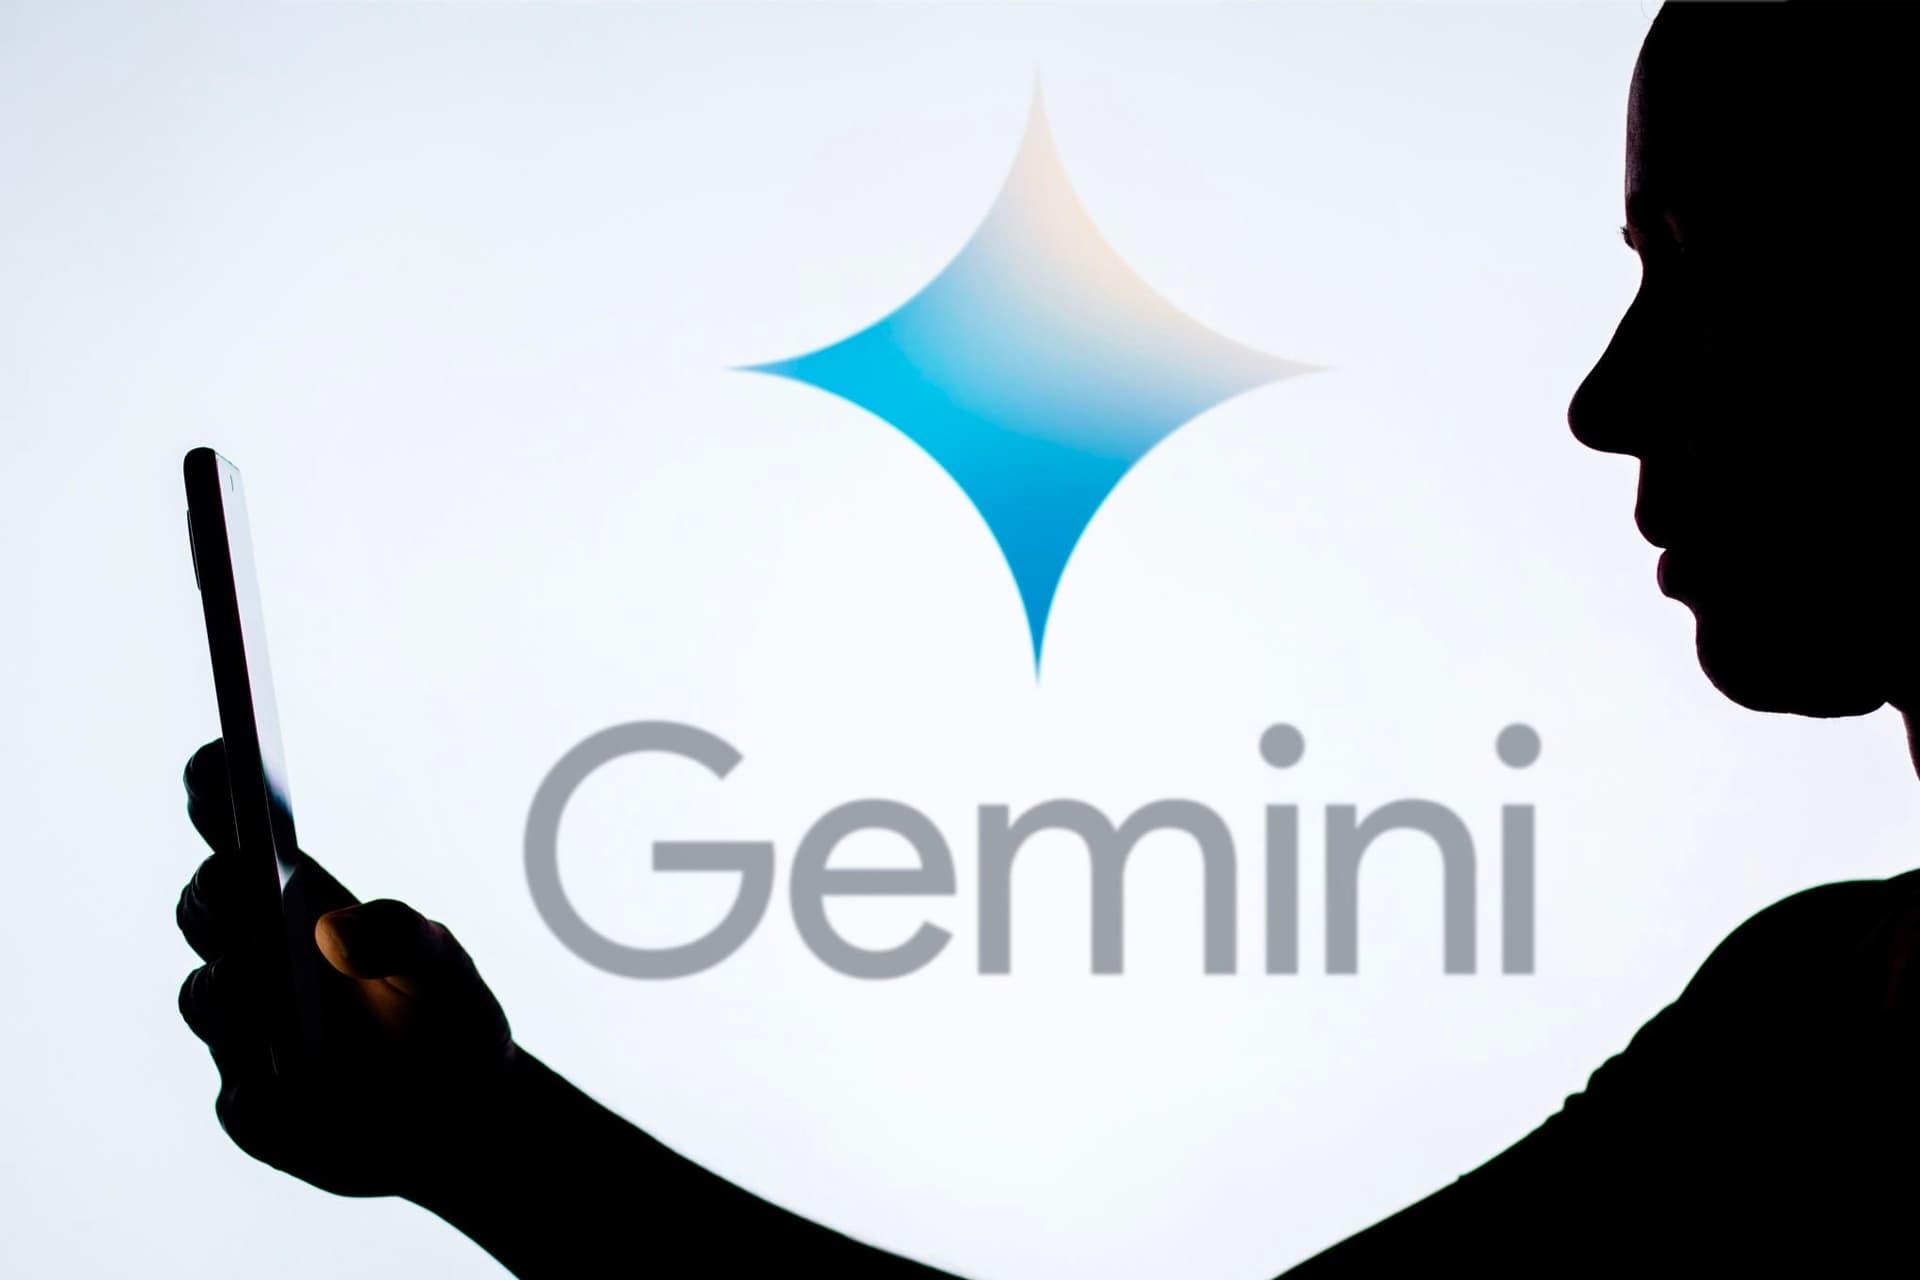 مرجع متخصصين ايران هوش مصنوعي گوگل جمناي / Google Gemini در پشت متخصصي با موبايل